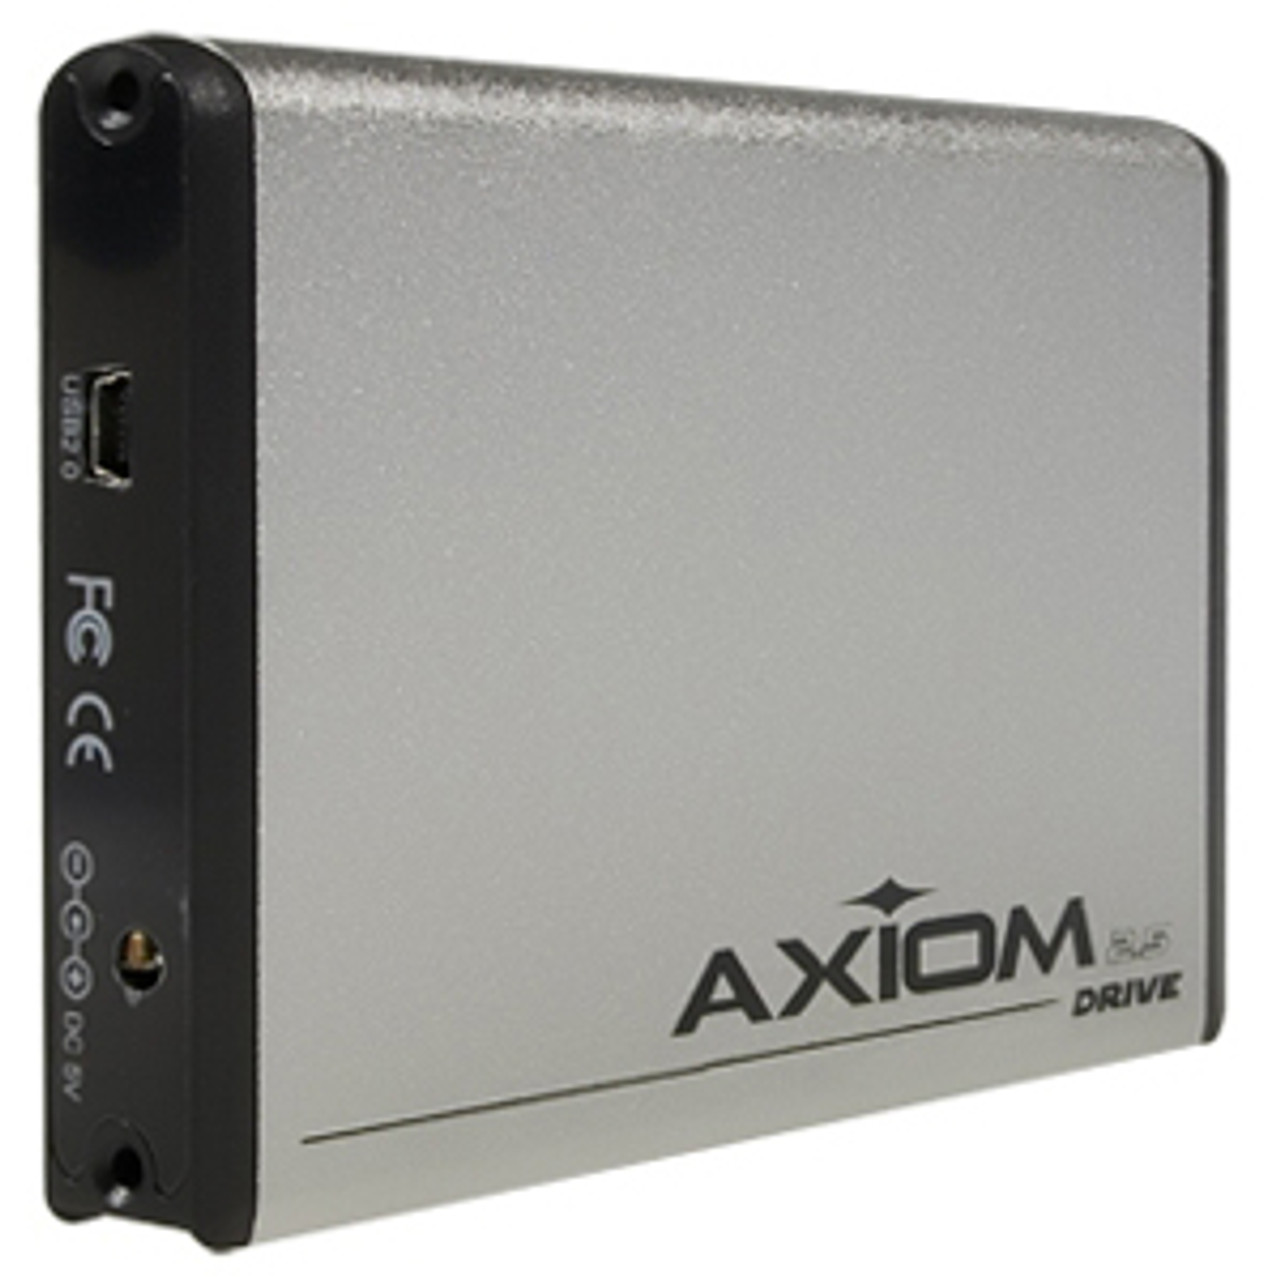 USBHD25S/160-AX - Axiom 160 GB 2.5 External Hard Drive - USB 2.0 - 5400 rpm